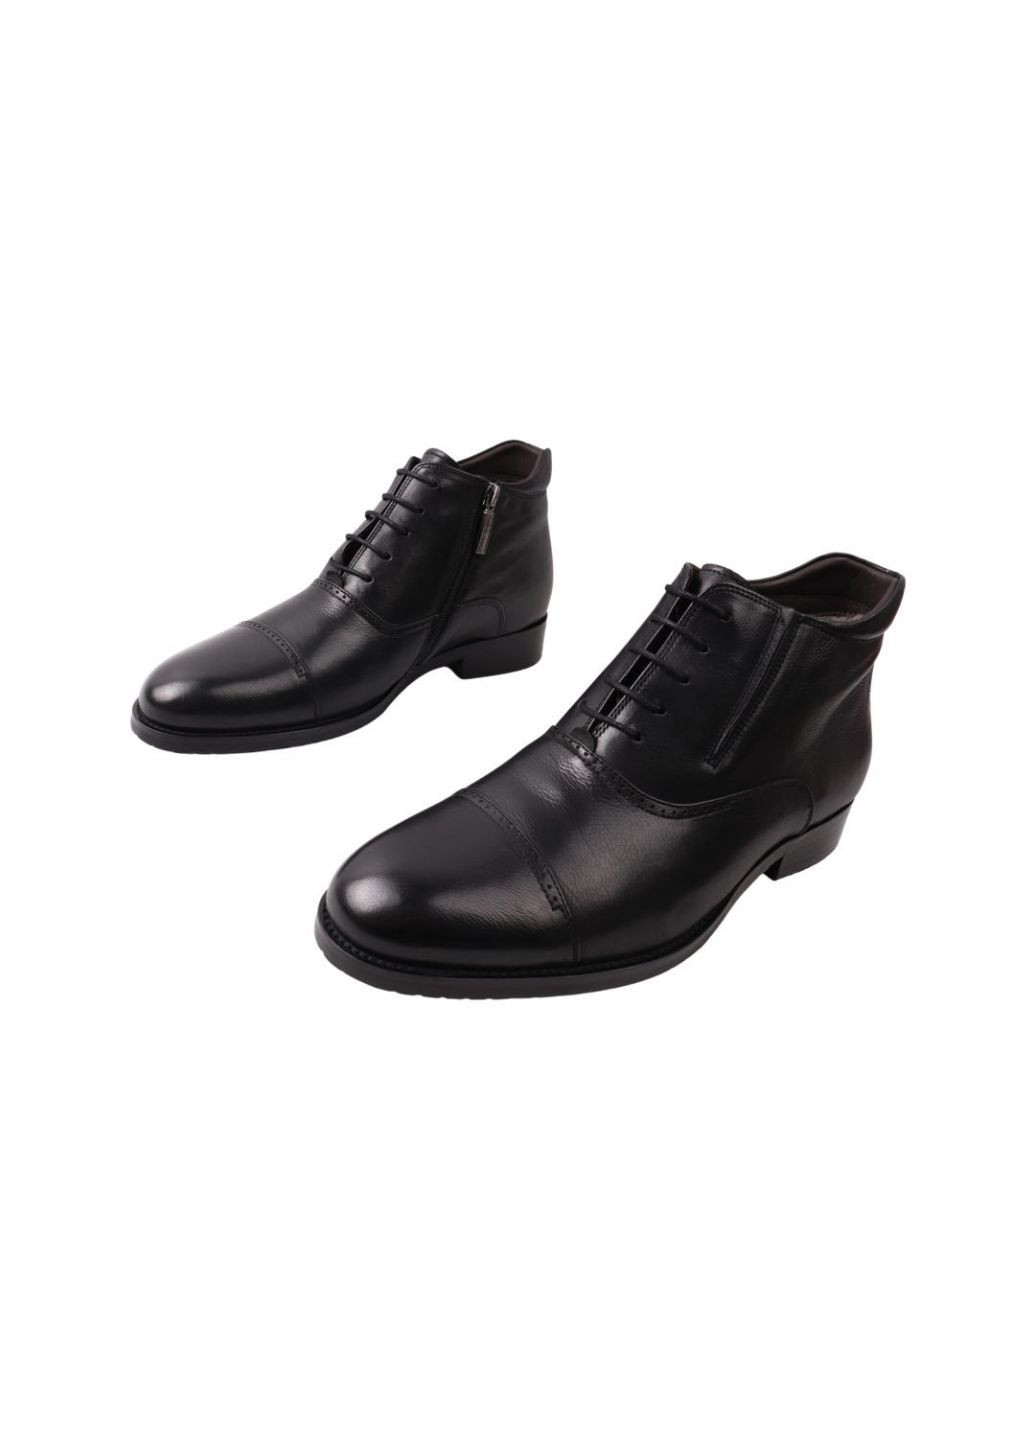 Черные ботинки мужские lido marinozi черные натуральная кожа Lido Marinozzi